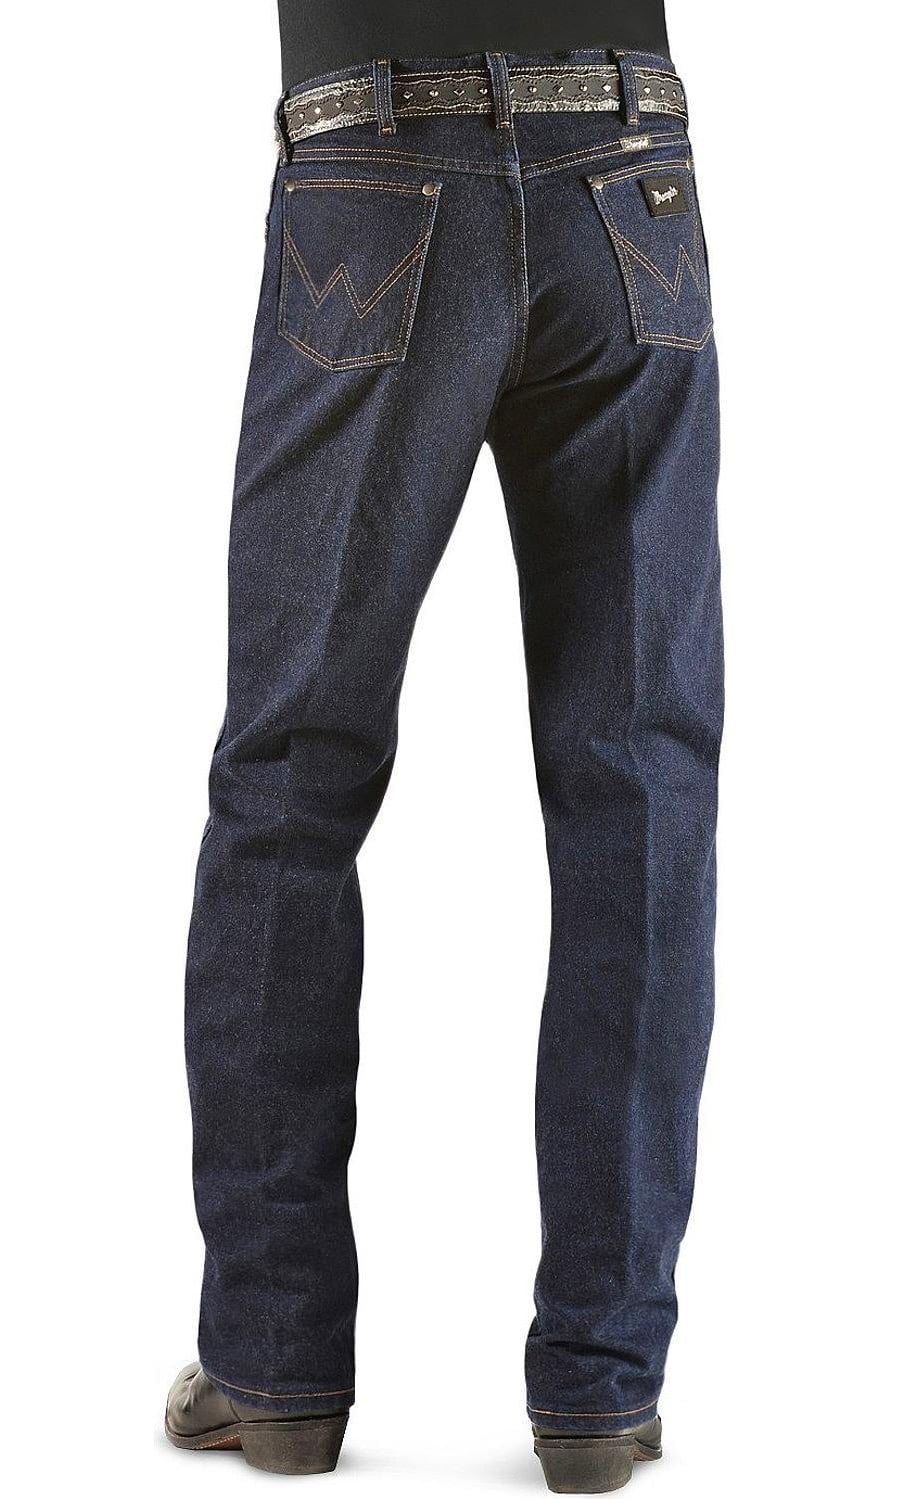 Arriba 100+ imagen wrangler jeans silver edition - Thptnganamst.edu.vn